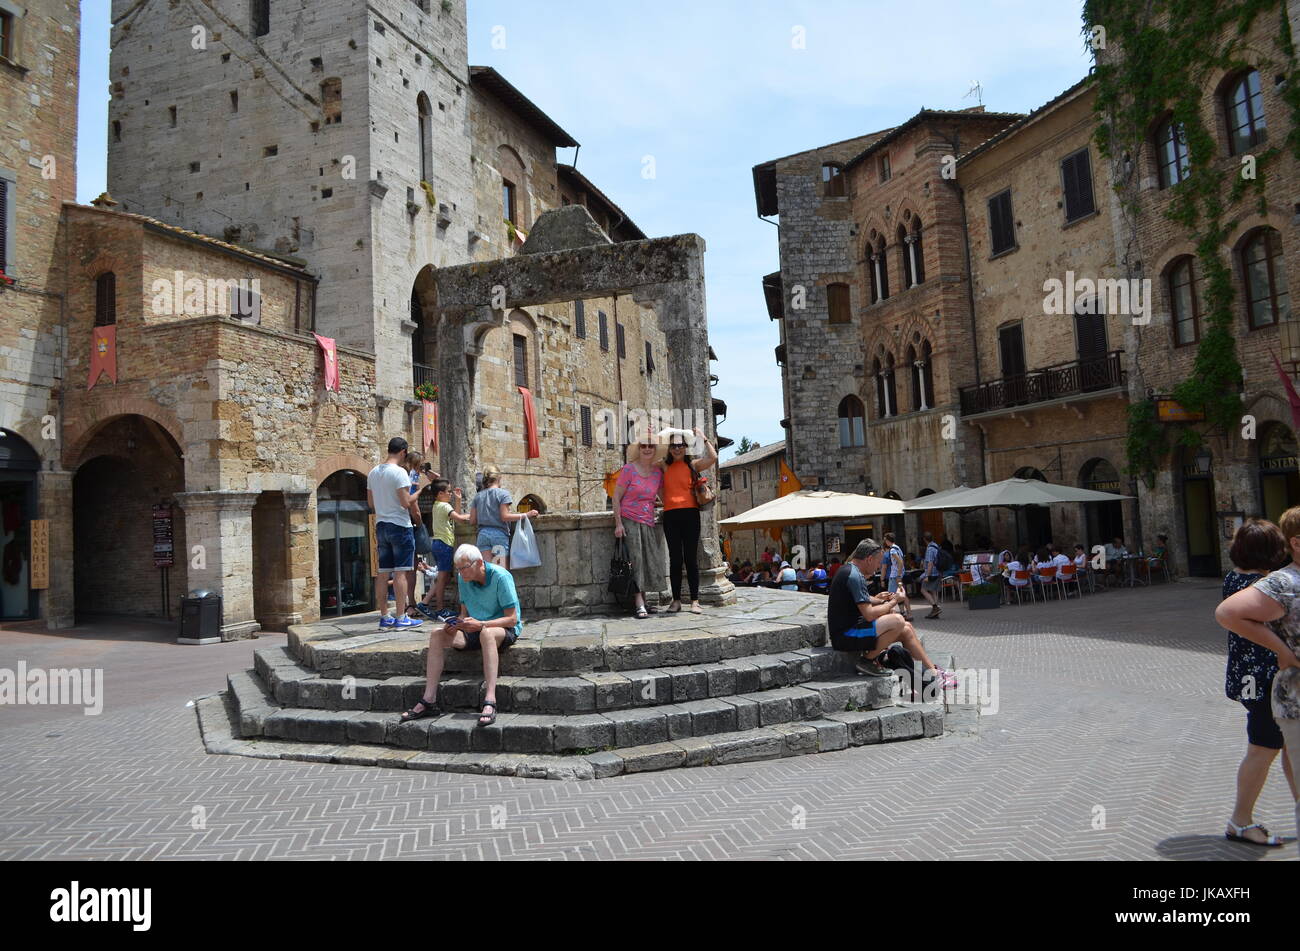 La cisterna in cui le persone fanno un desiderio in San Gimignano,Toscana, Italia. Foto Stock